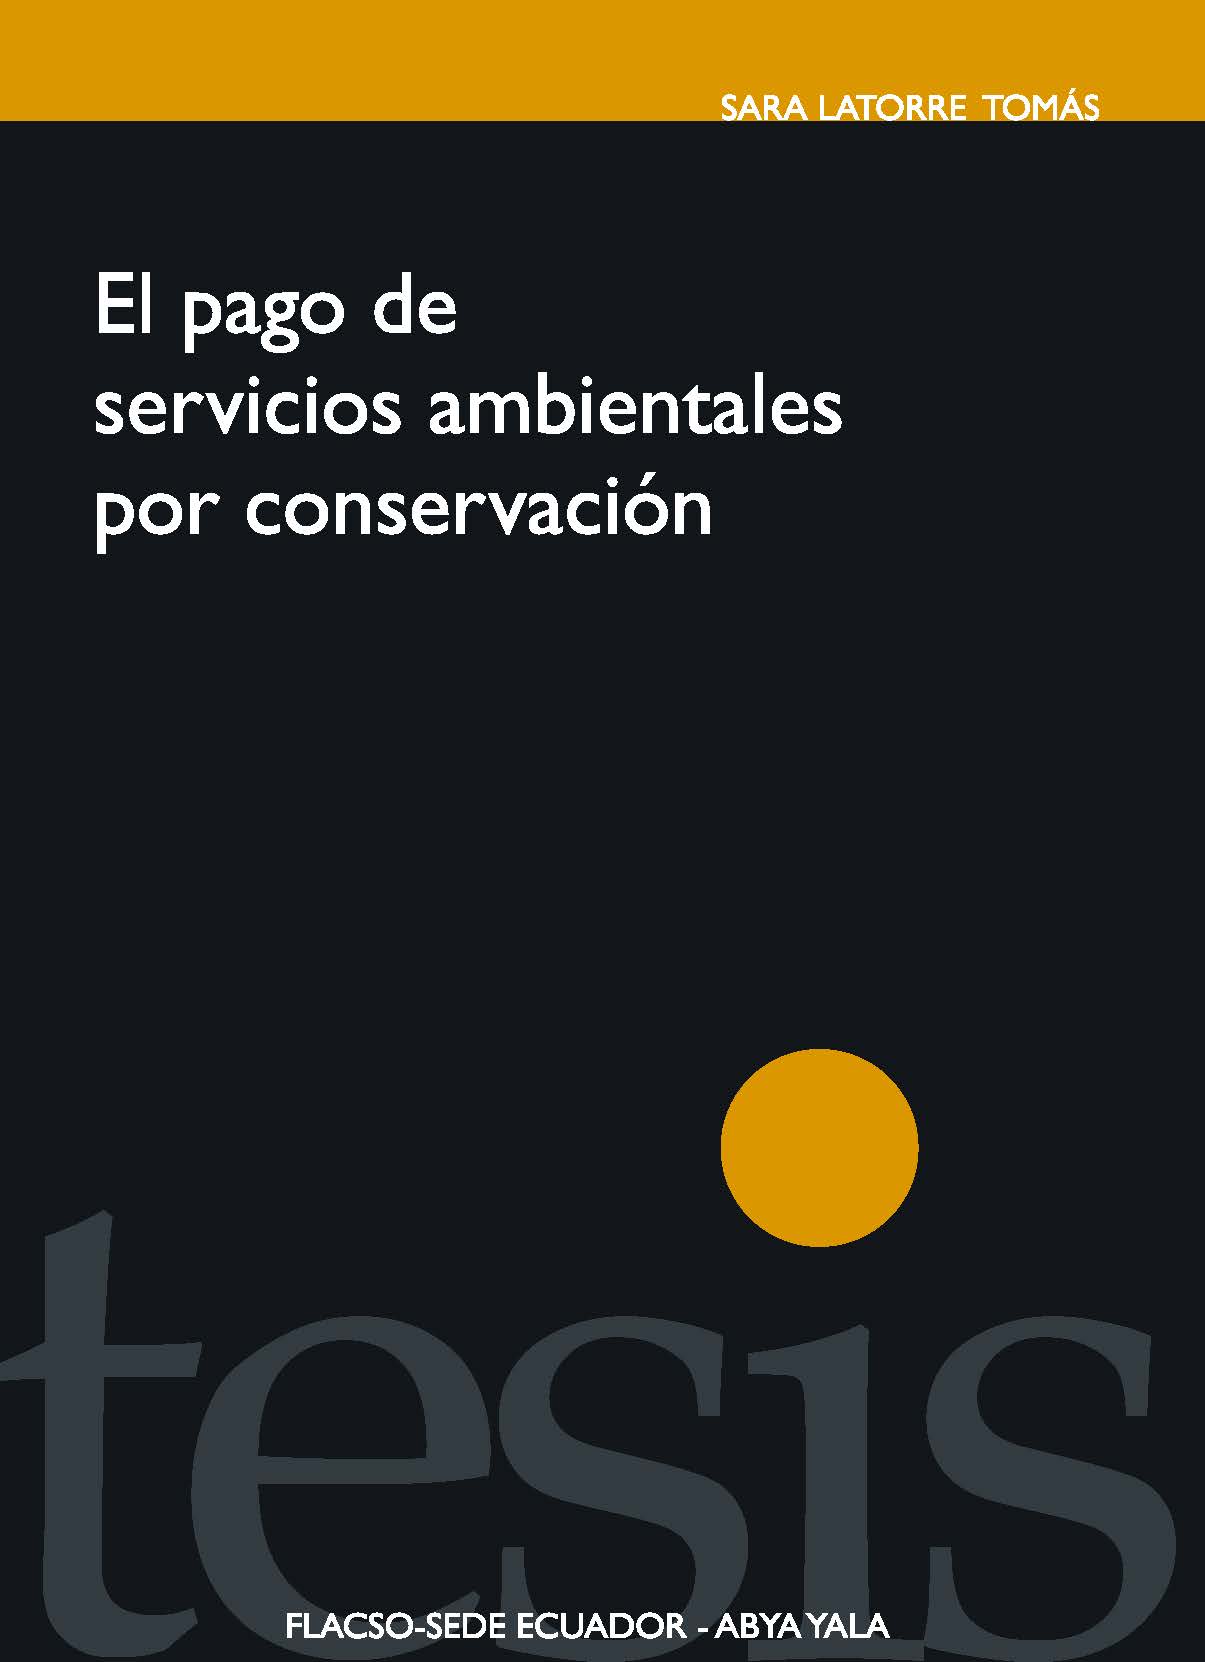 El pago de servicios ambientales por conservación